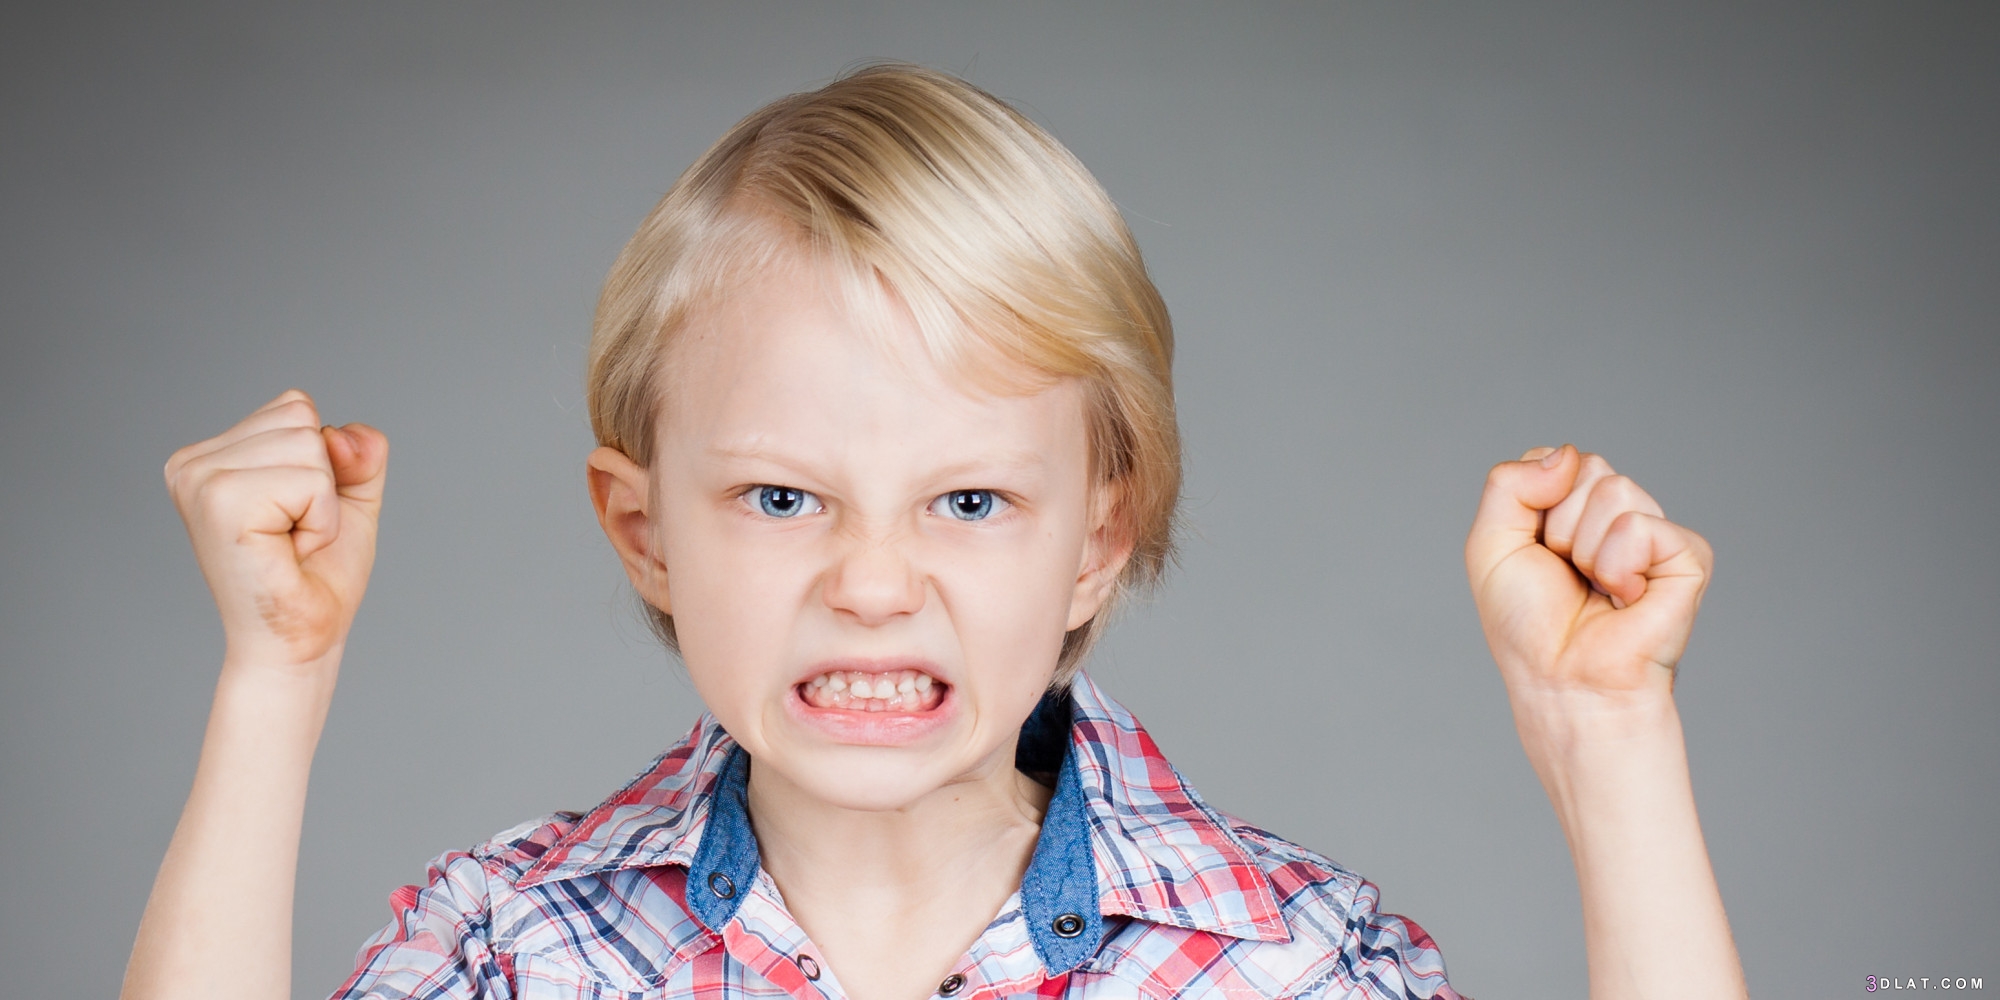 مشكلة الغضب عند الأطفال 10طرق لمعالجة غضب الأطفال كيف نُسَيطِر على الغضب عن